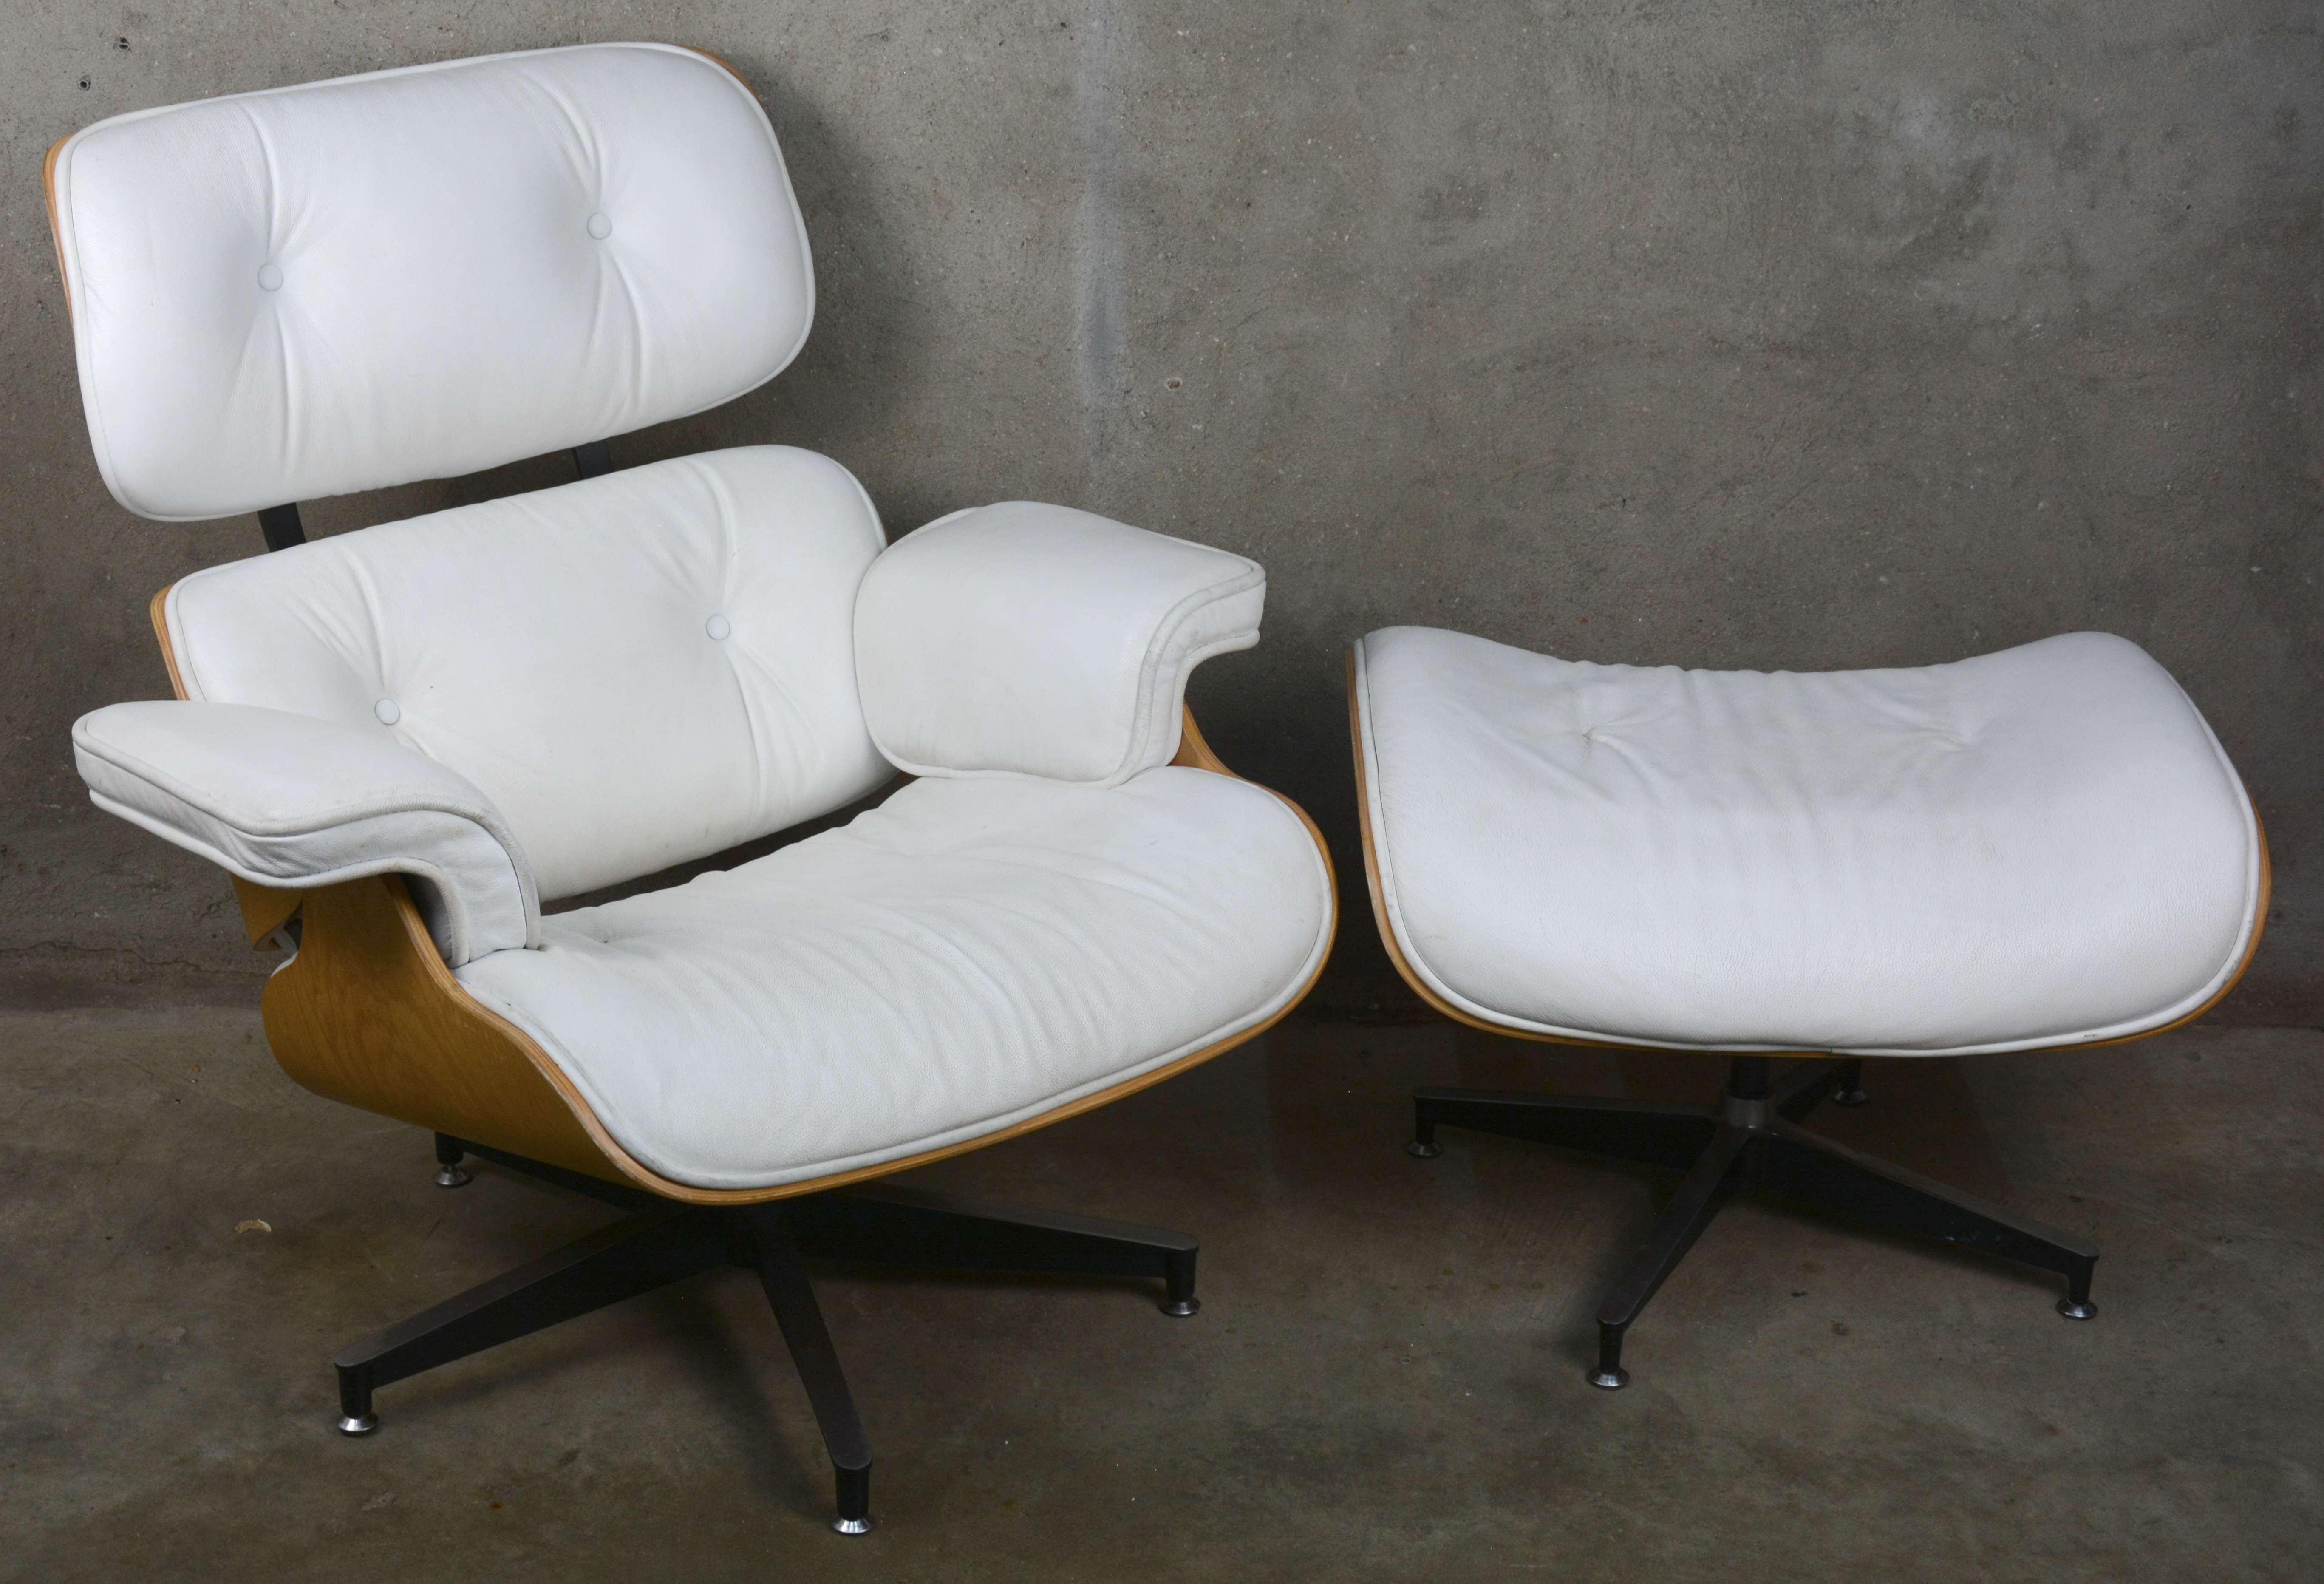 Perceptueel barbecue voorstel Een lounge chair met ottoman naar model van Eames. Met wit lederen  bekleding. Lichte gebruikssporen. – Jordaens N.V. Veilinghuis